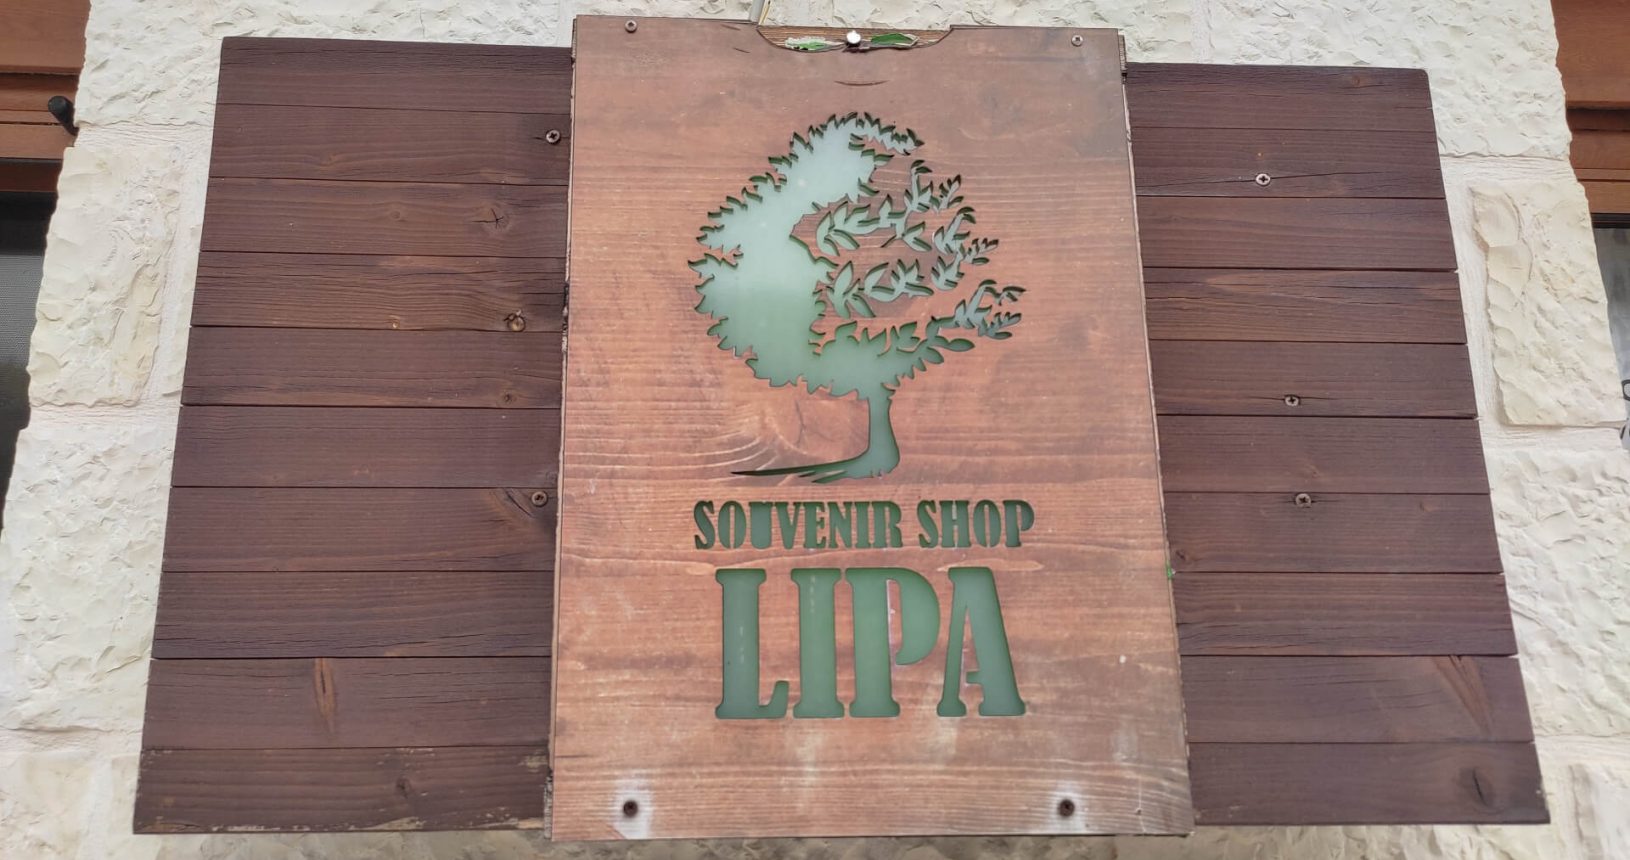 Lipa Cave souvenir shop